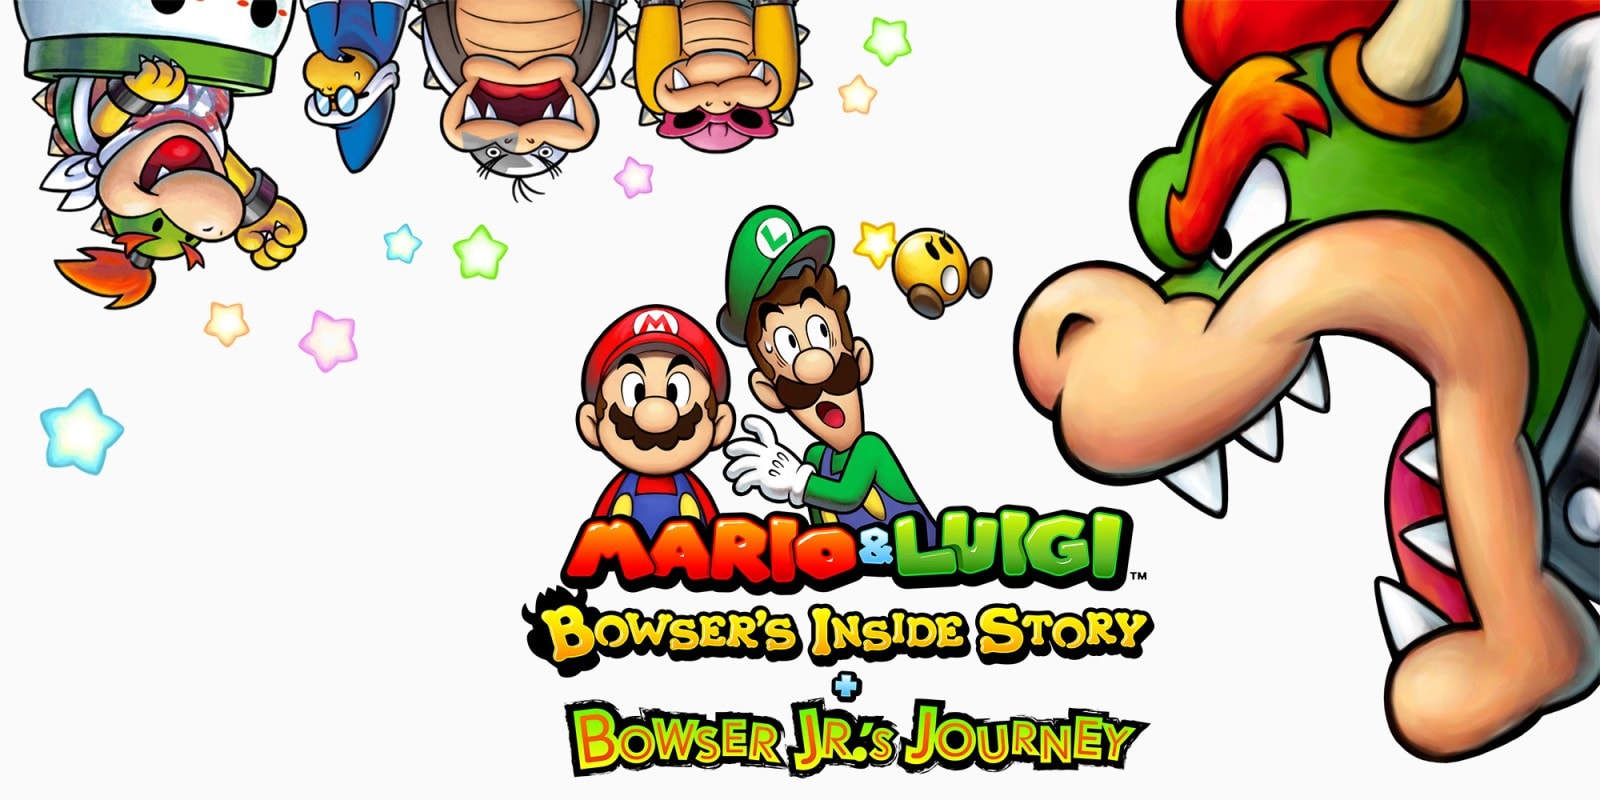 Mario & Luigi: Bowser's Inside Story + Bowser Jr's Journey Hero Image